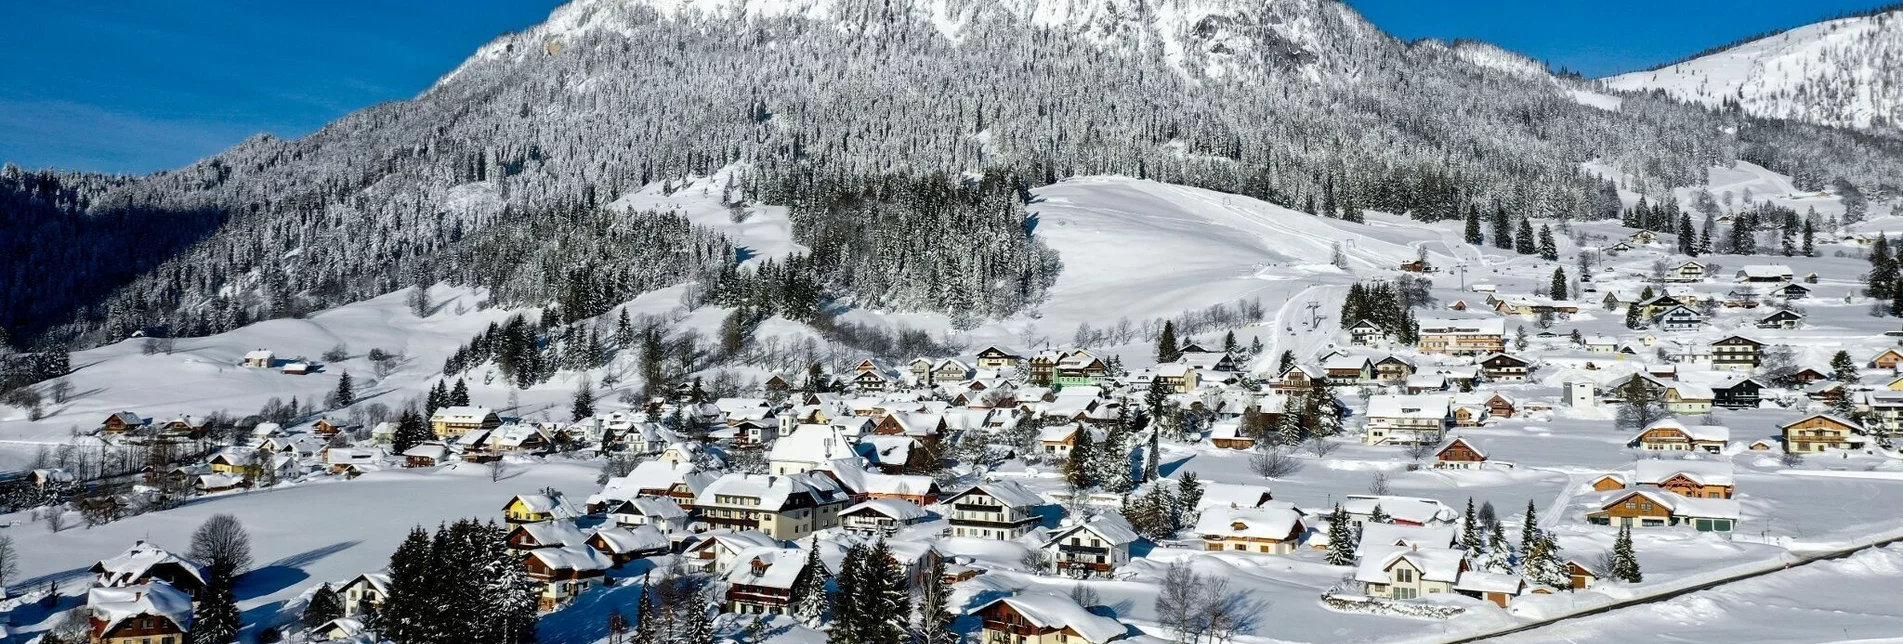 Winterwandern Winterwanderweg im Ort Tauplitz - Touren-Impression #1 | © Ausseerland